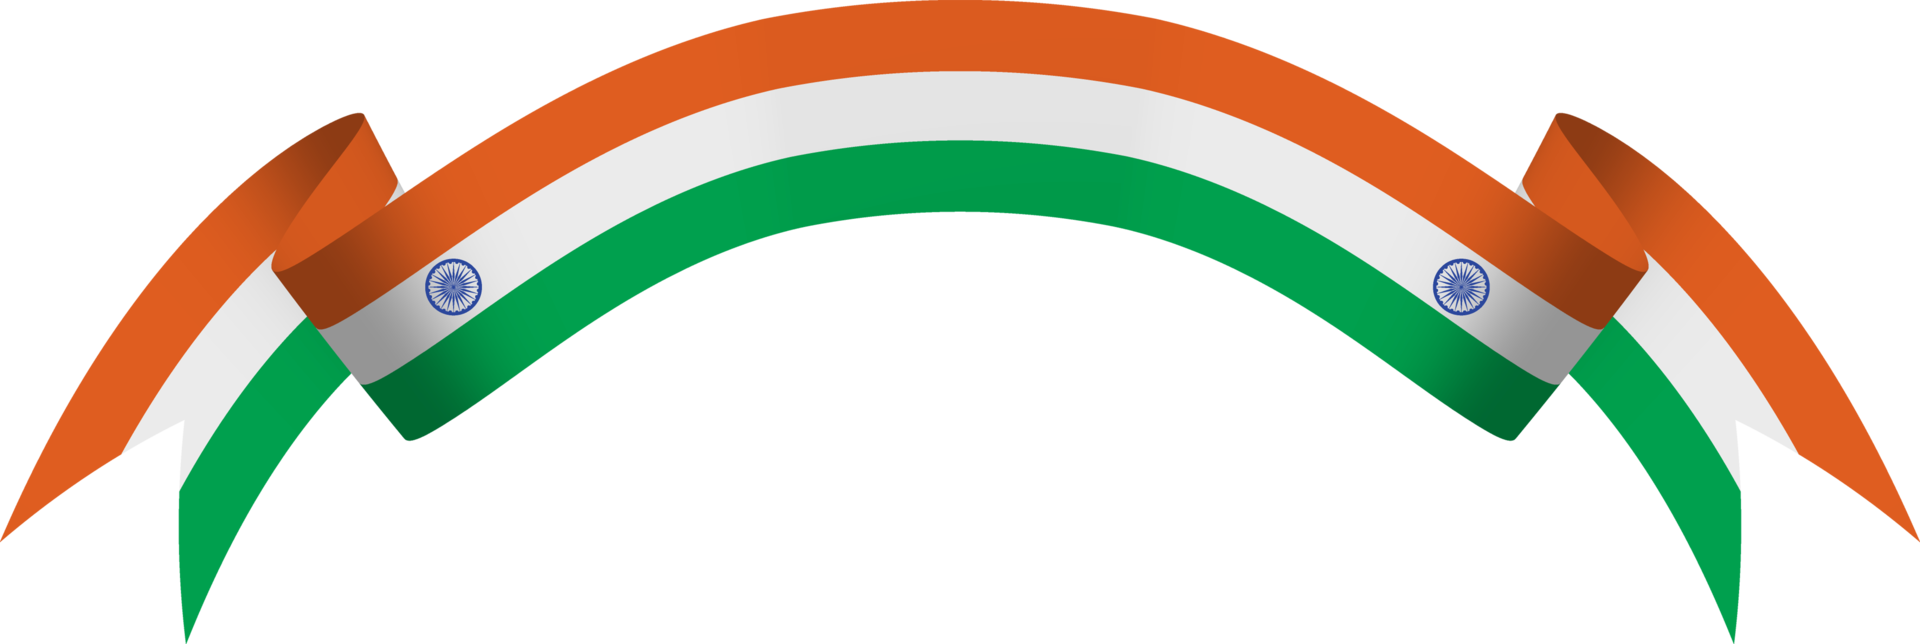 bannière de ruban de drapeau indien png